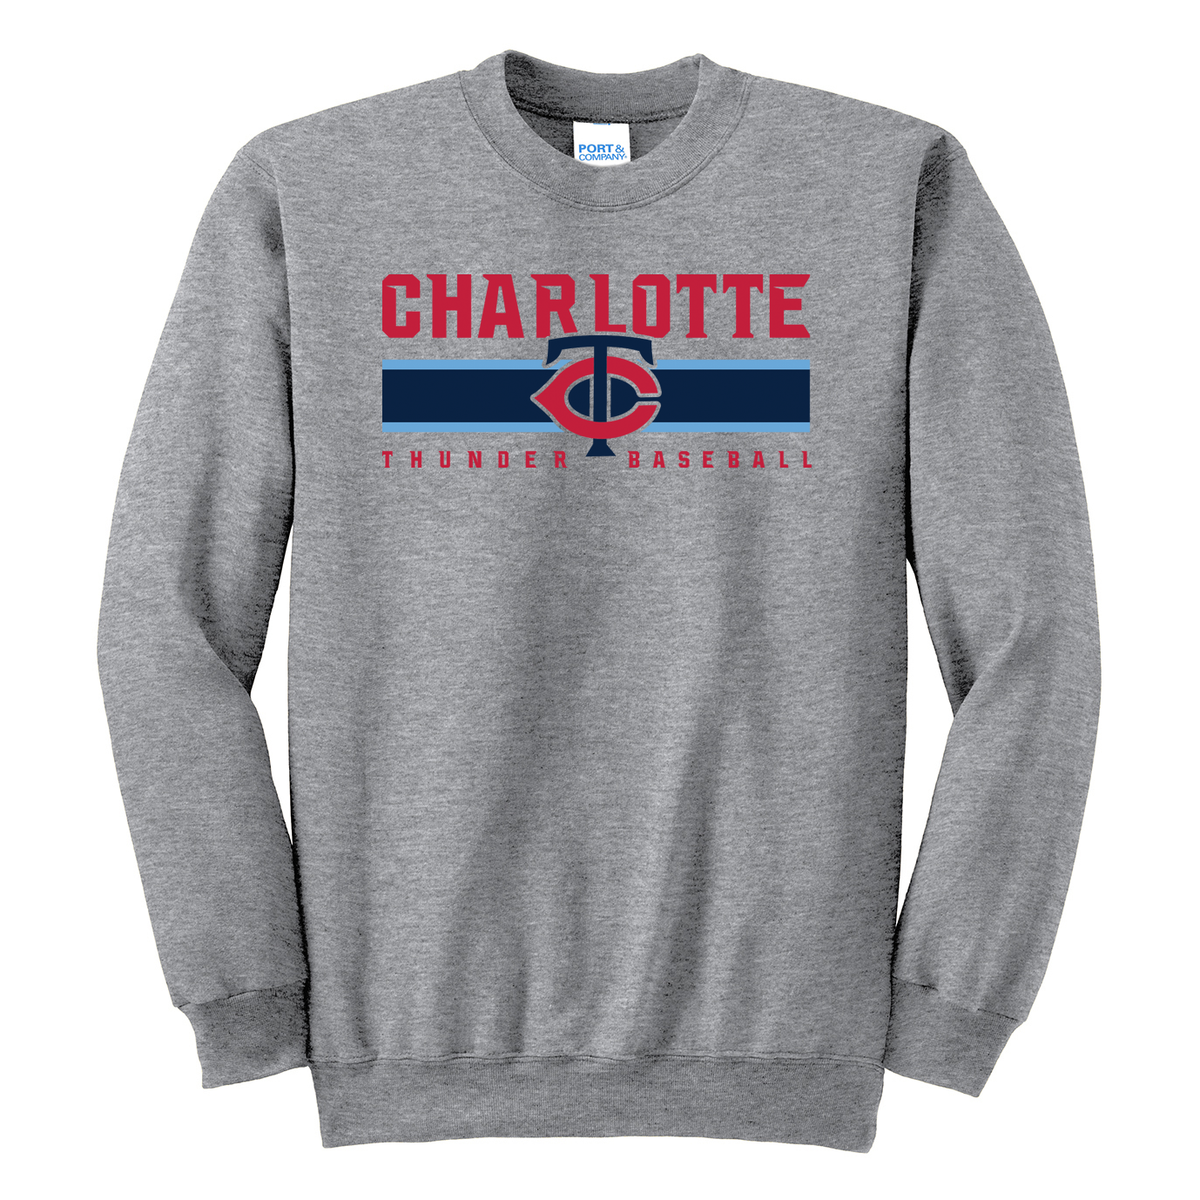 Charlotte Thunder Baseball Crew Neck Sweater